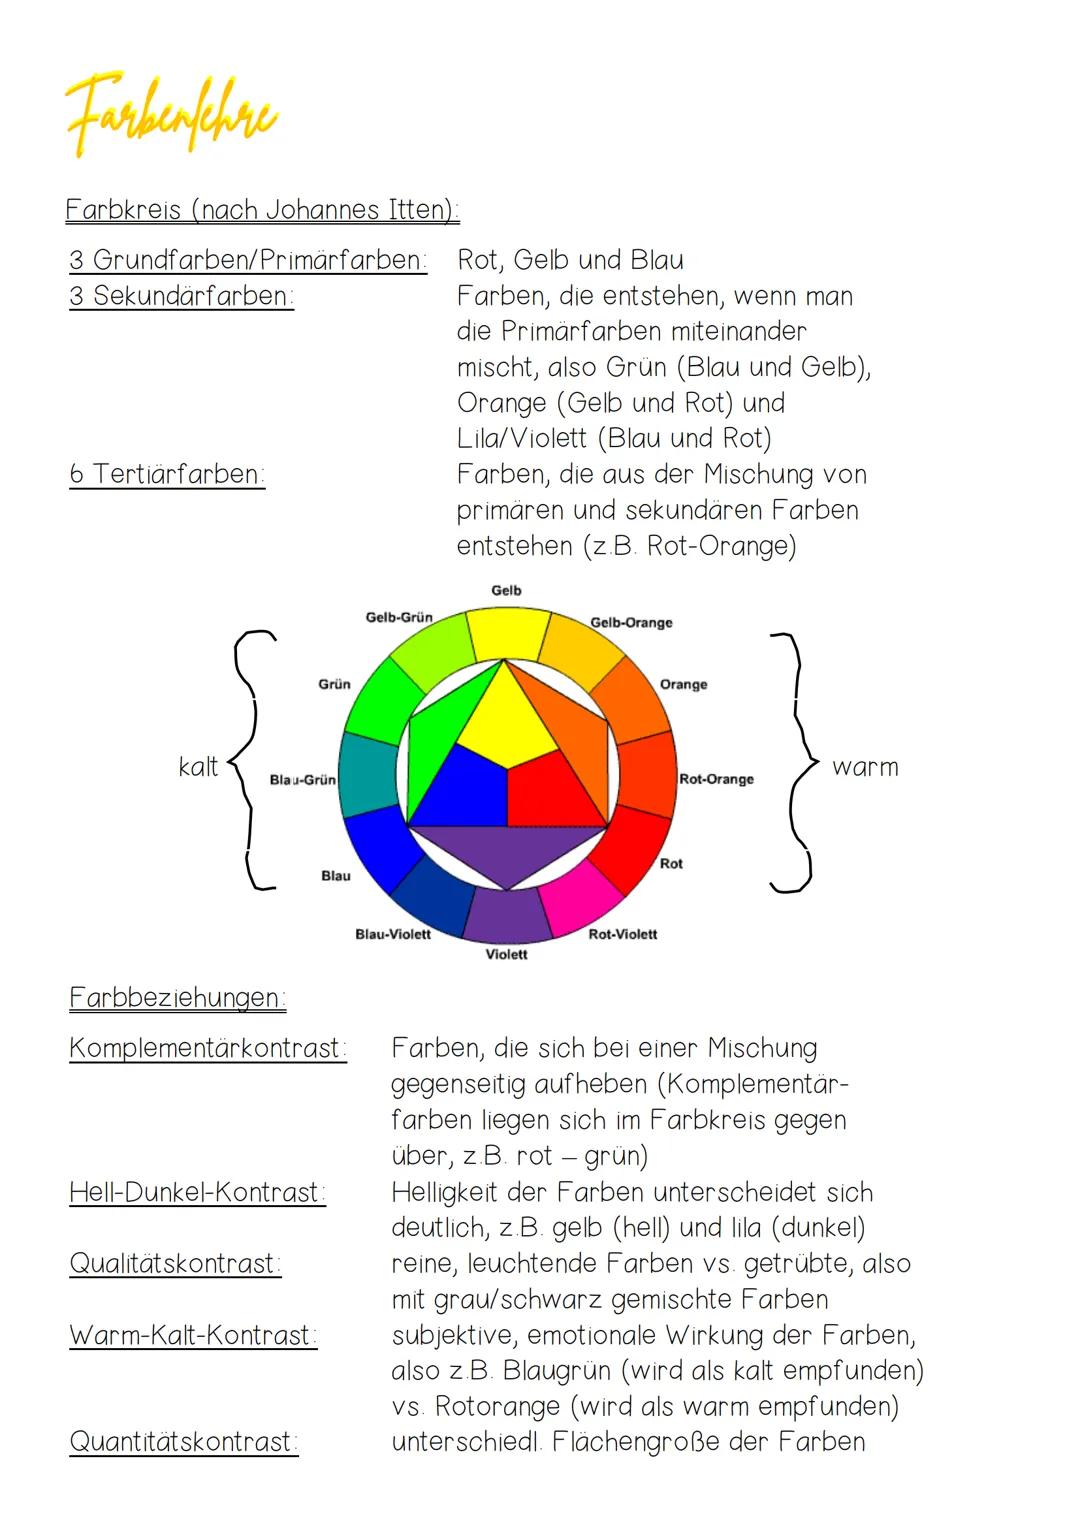 Farbenfchre
Farbkreis (nach Johannes Itten):
3 Grundfarben/Primärfarben:
3 Sekundärfarben:
6 Tertiärfarben:
kalt
Blau-Grün
Grün
Farbbeziehun